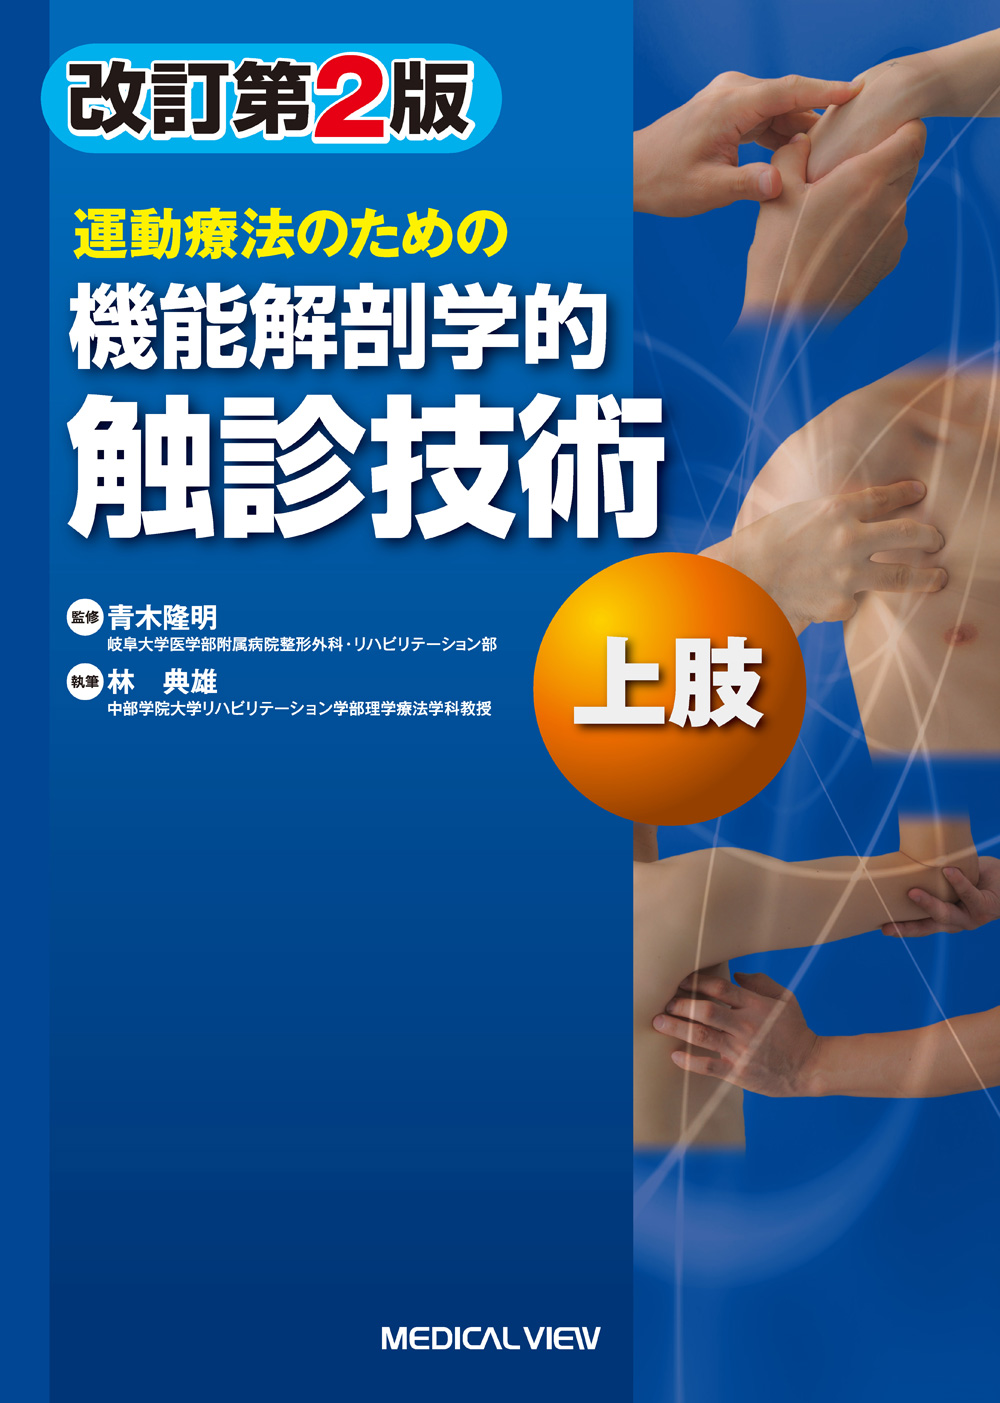 メジカルビュー社｜作業療法士｜機能解剖学的触診技術 上肢